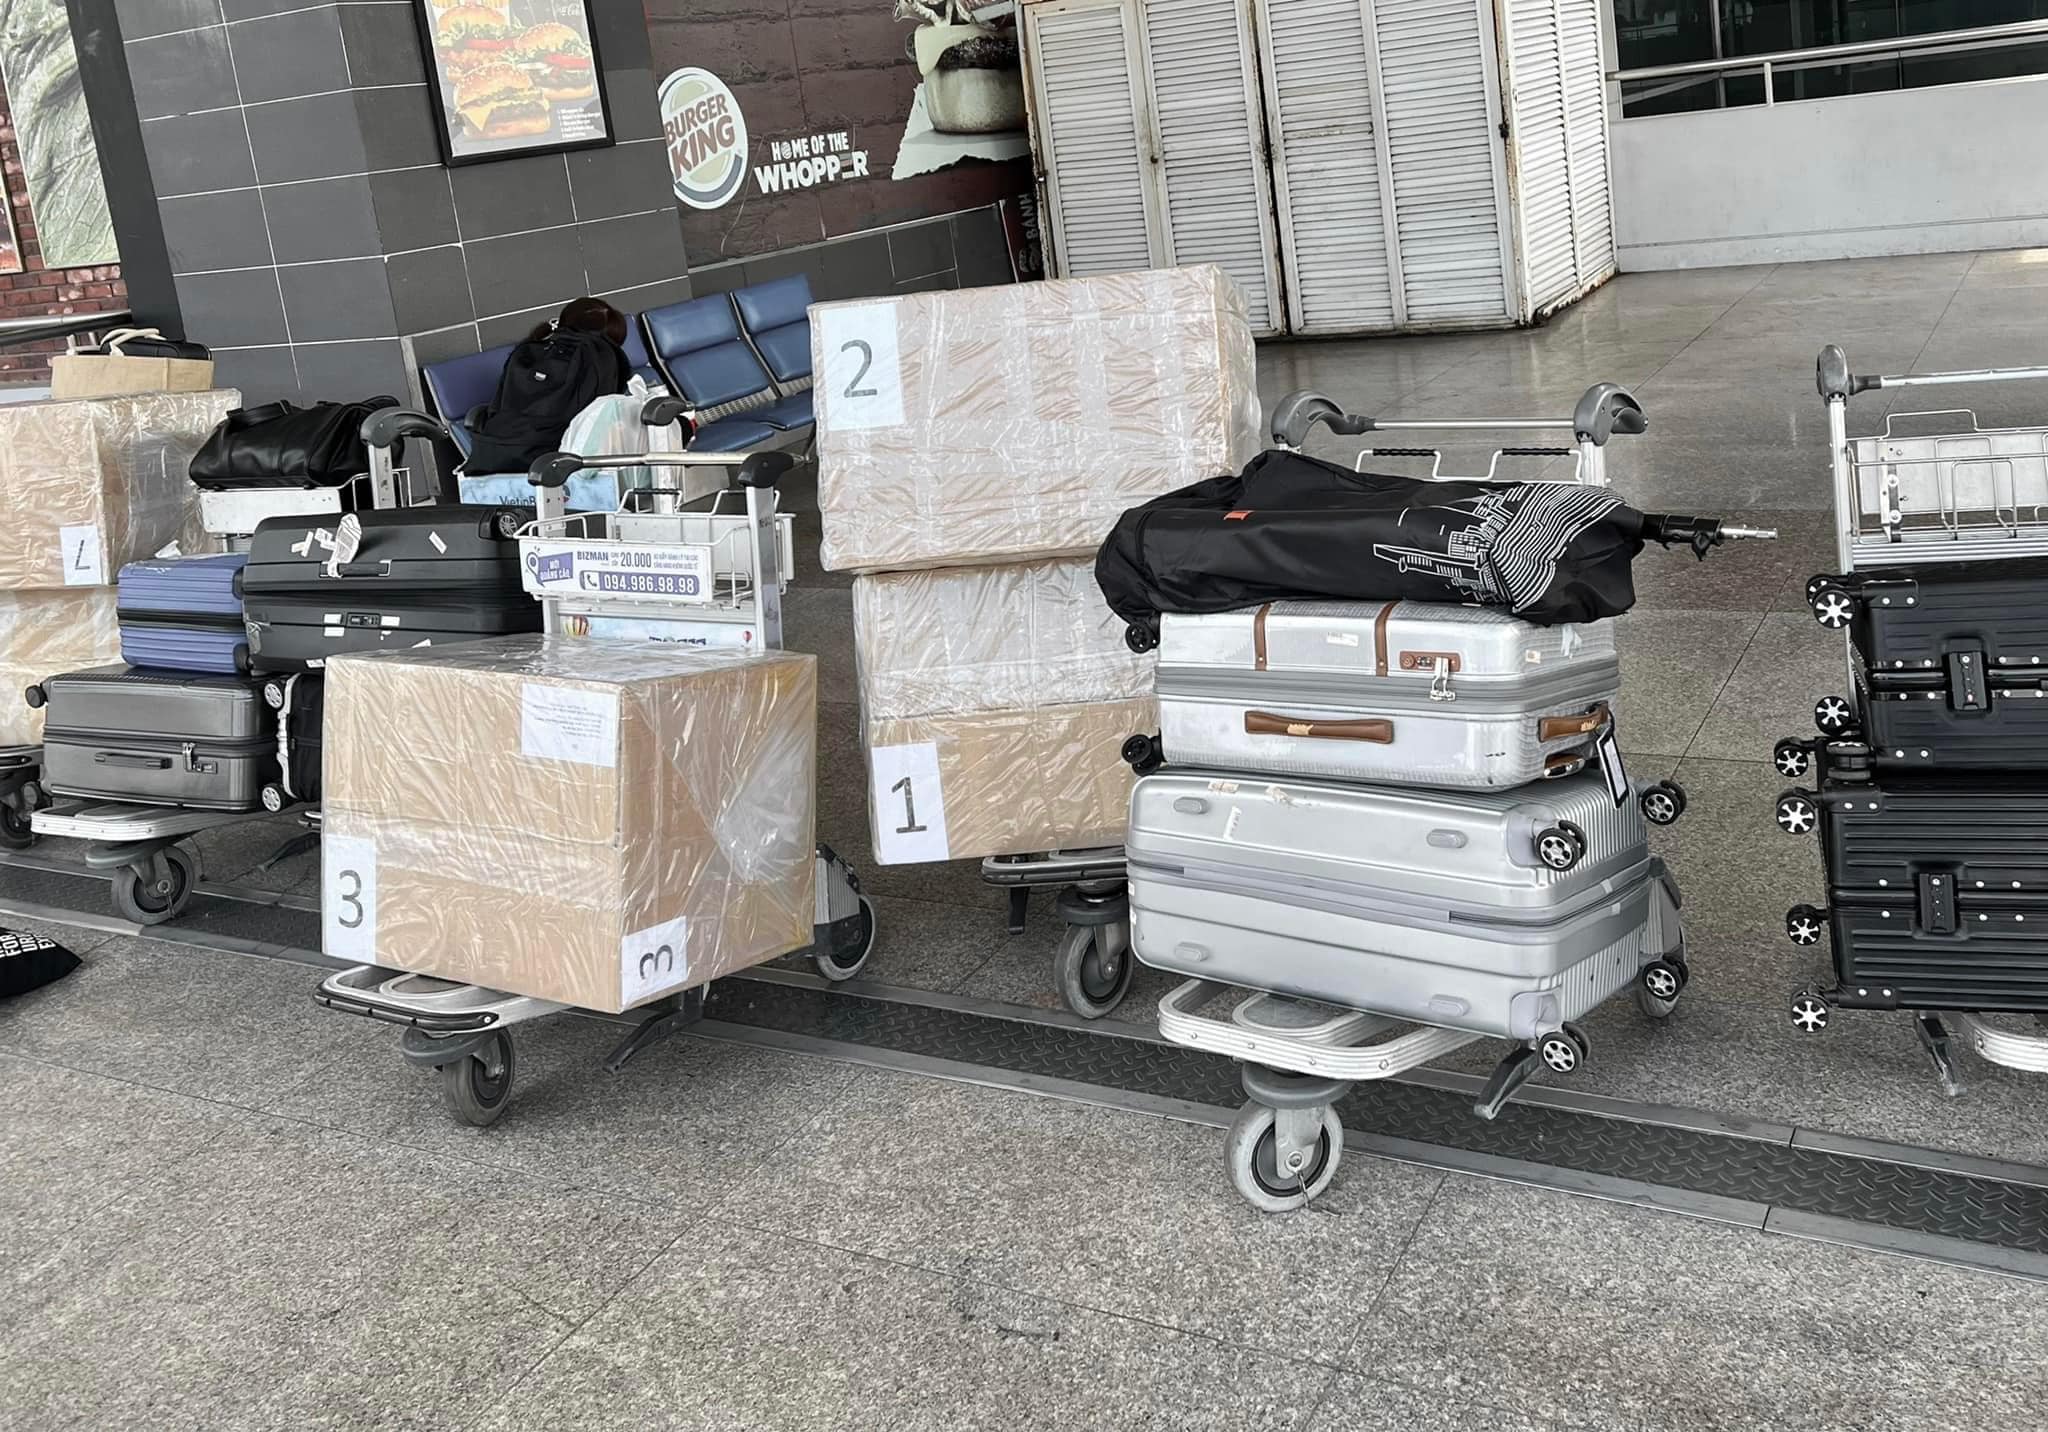 Lý Nhã Kỳ mang 43 chiếc vali đựng trang phục để tham dự LHP Cannes 2022, thưởng ekip 10.000 Euro xài chơi